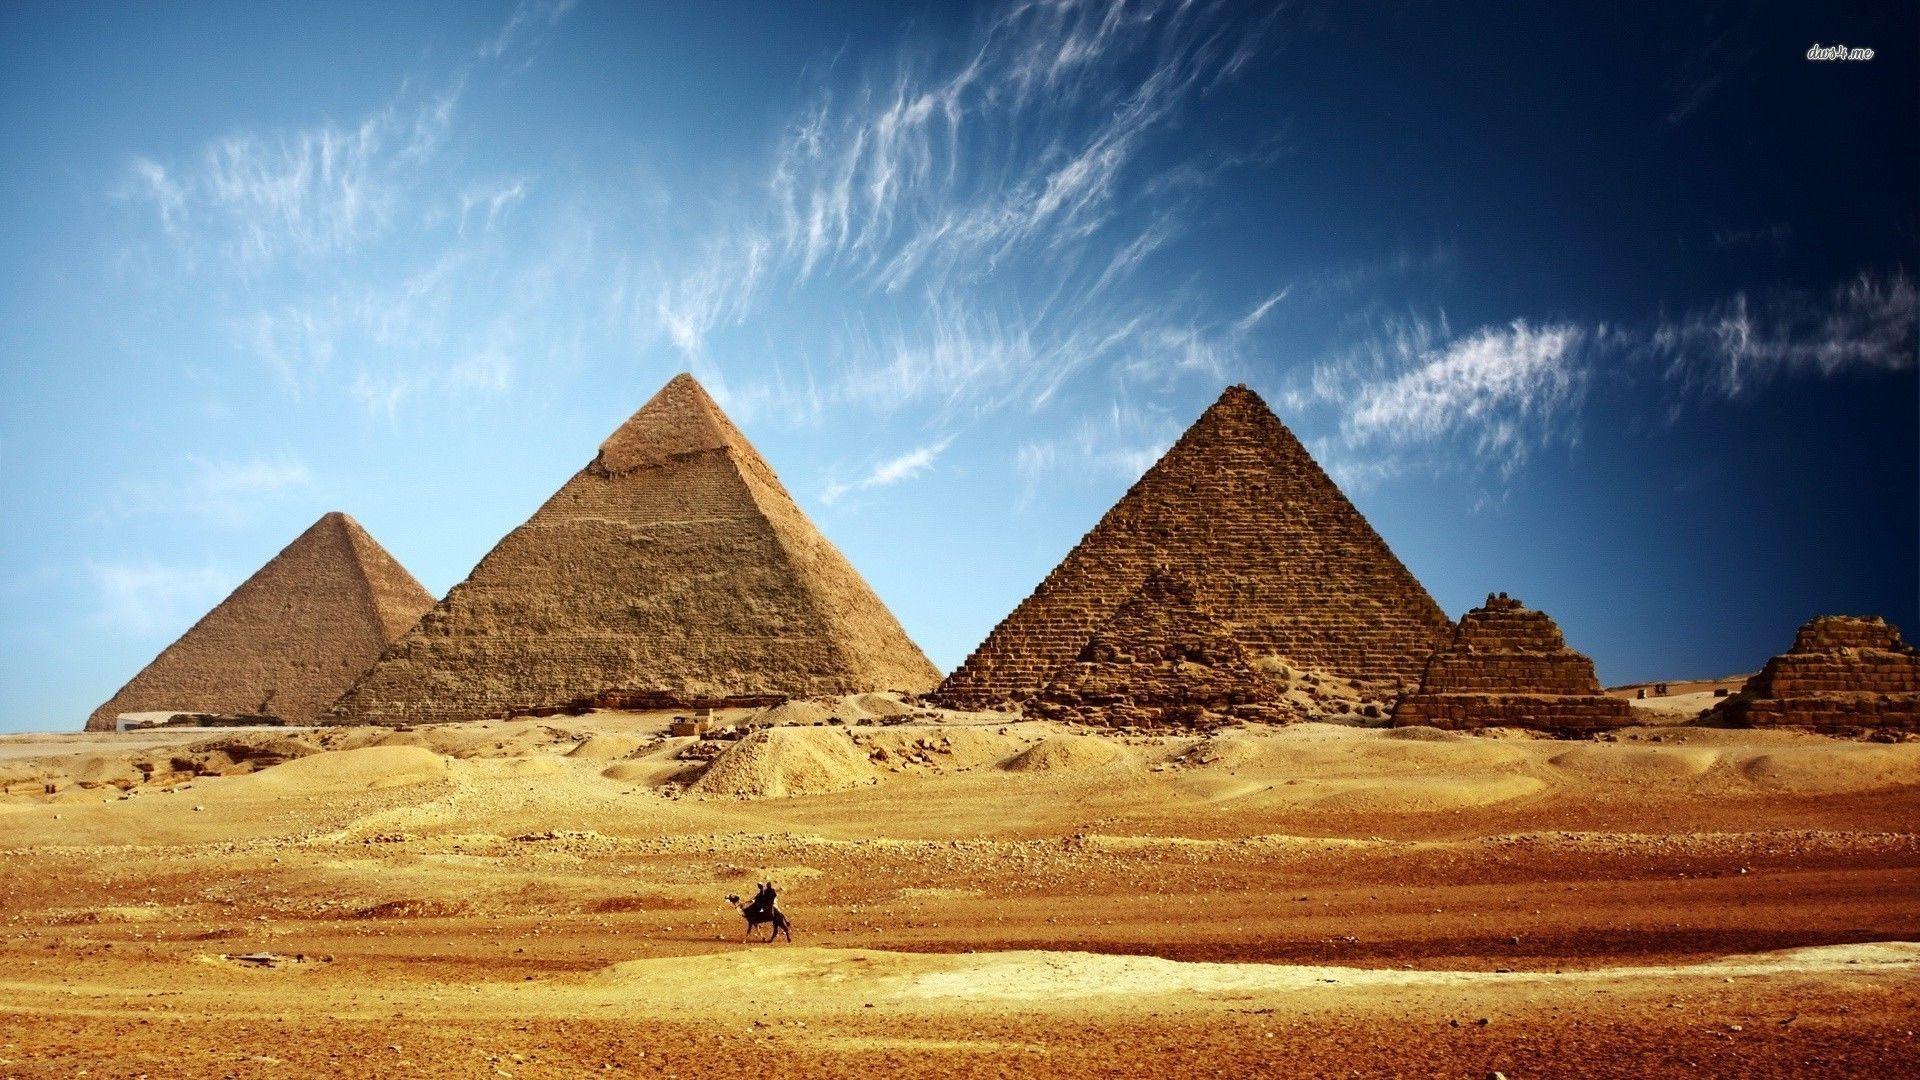 Wallpaper assassin's creed: origins, egypt, pyramids, video game desktop  wallpaper, hd image, picture, background, 094af7 | wallpapersmug